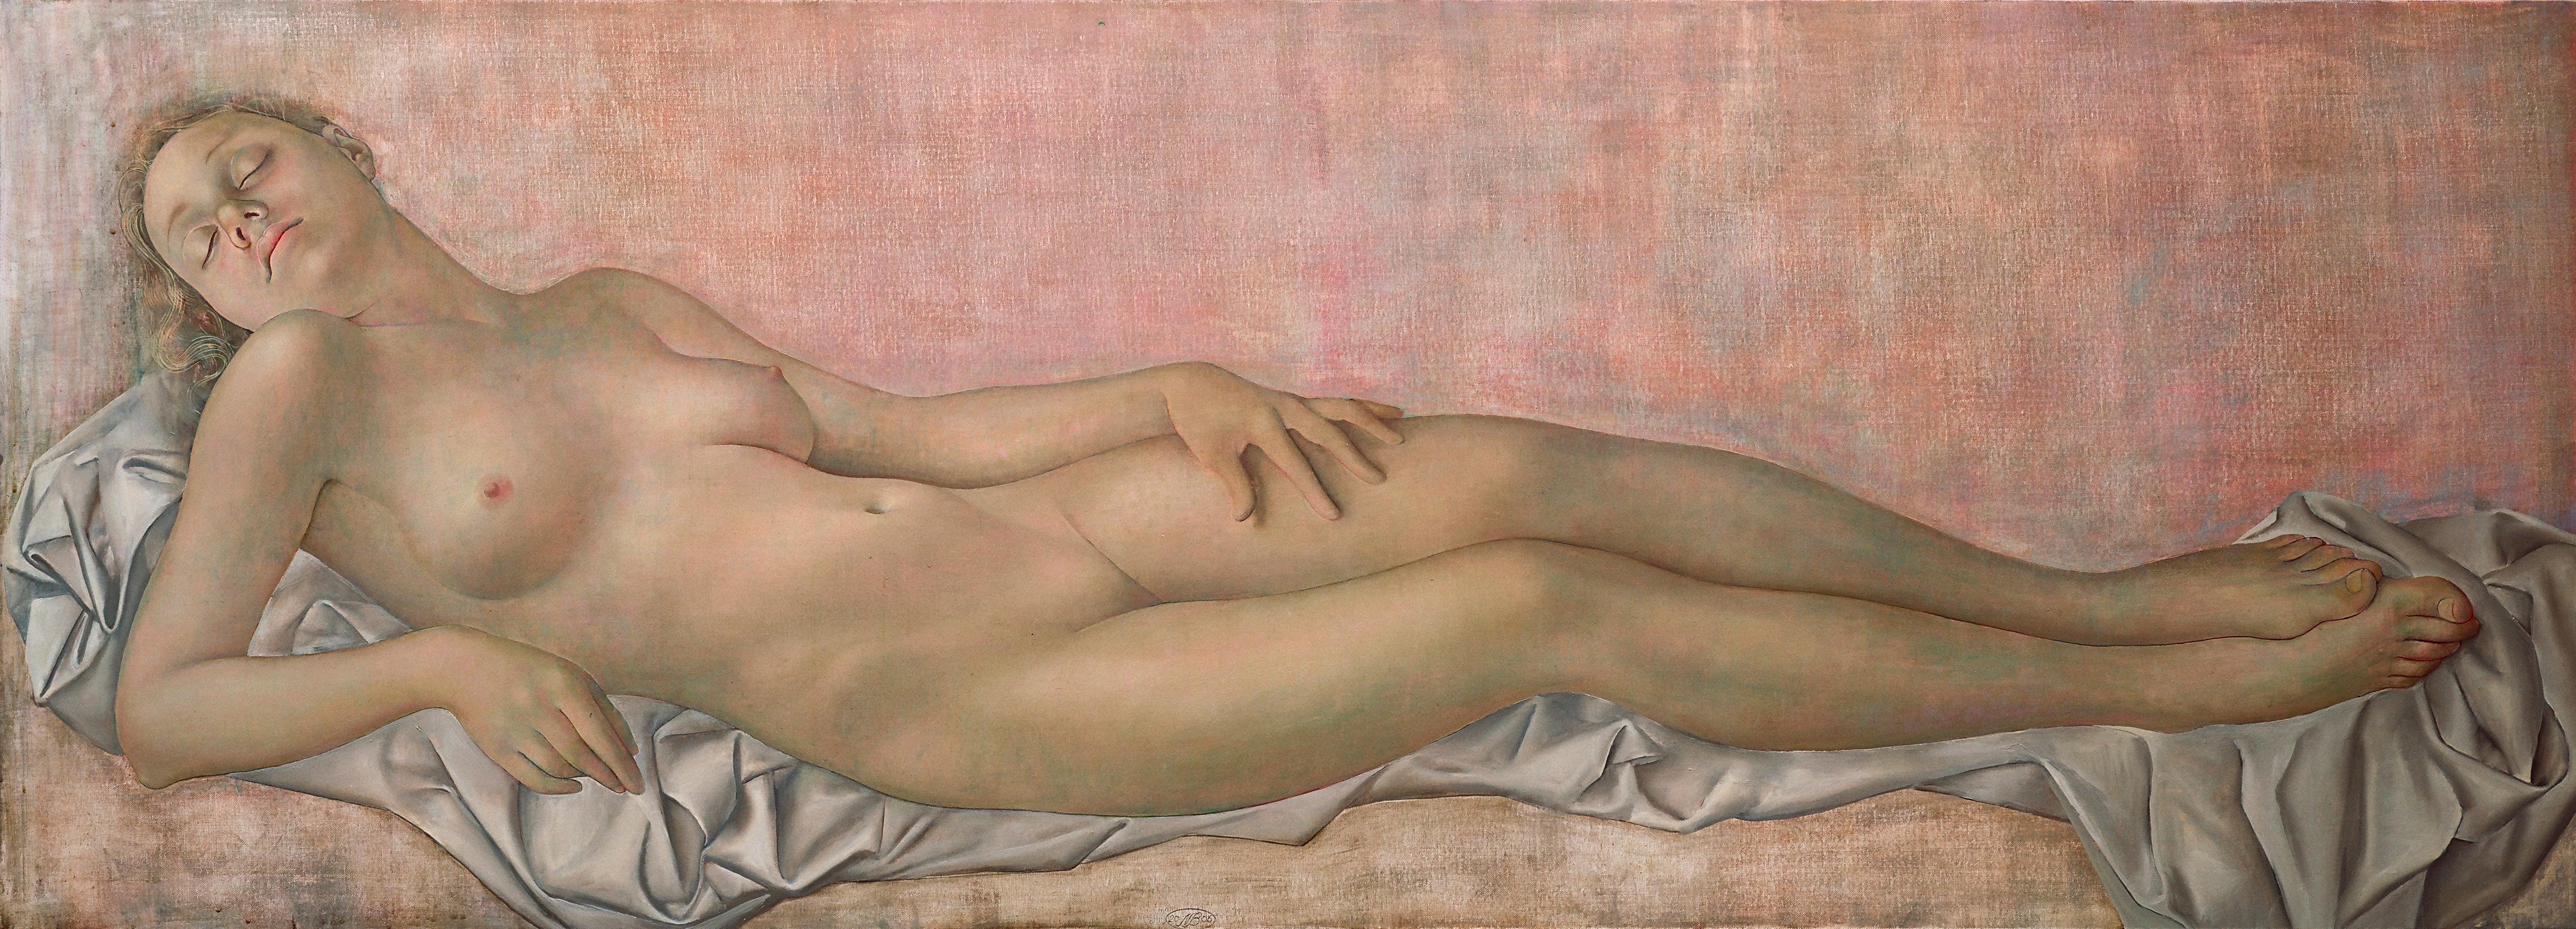 Venus. 2006. Oil on canvas, 66x183 cm